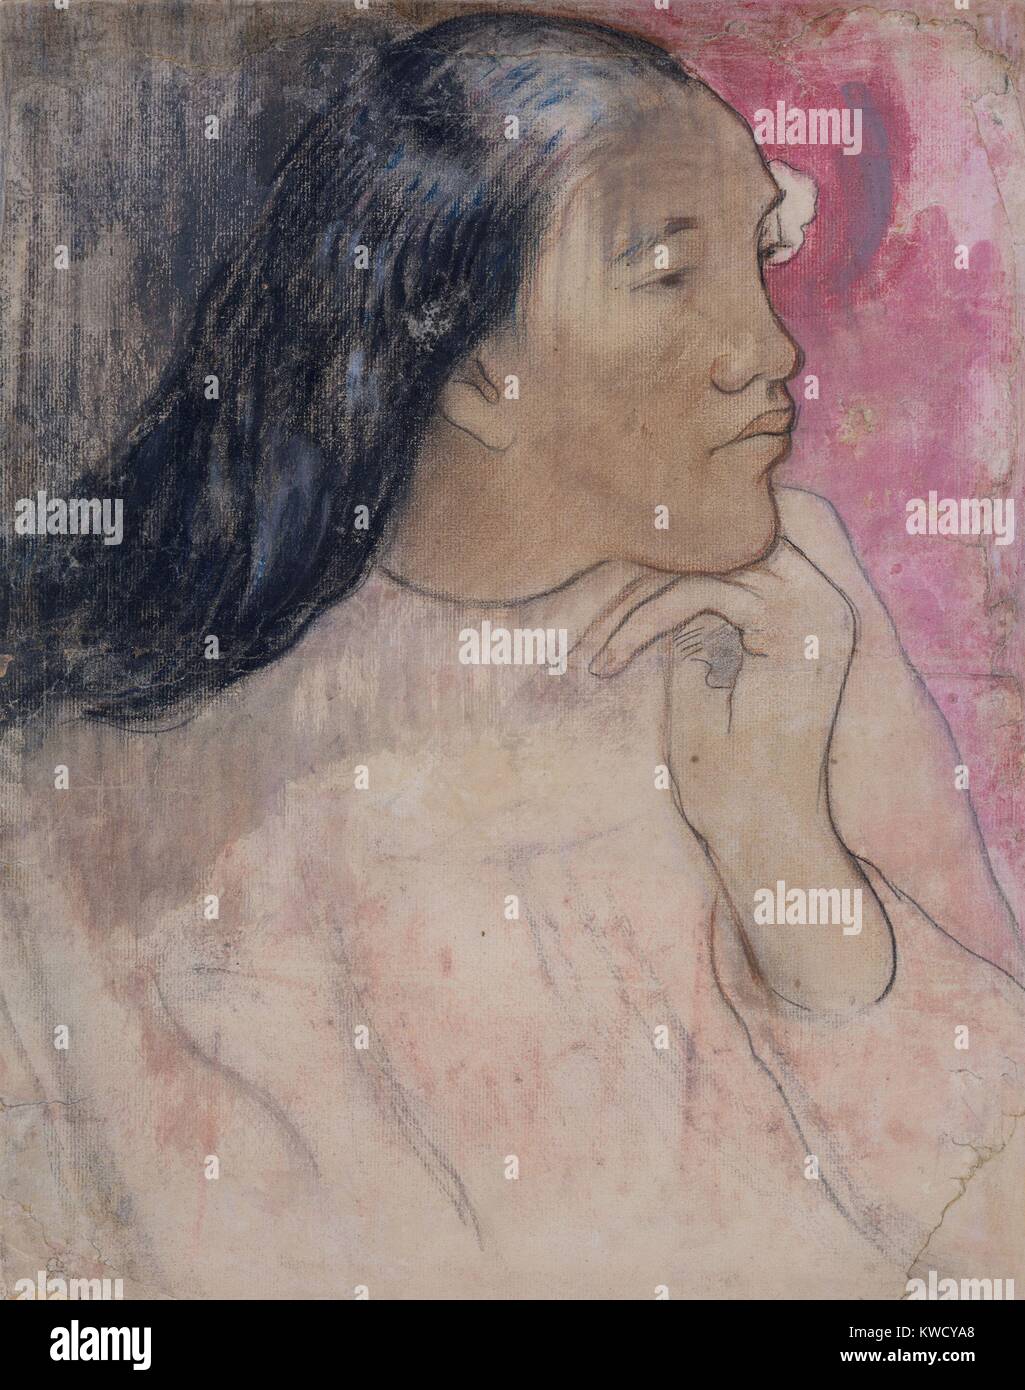 Tahitienne avec une fleur dans ses cheveux, de Paul Gauguin, 1891-1892, le postimpressionnisme français. Il s'agit d'une technique mixte de dessin fusain, pastel, et laver (BSLOC 2017 5 29) Banque D'Images